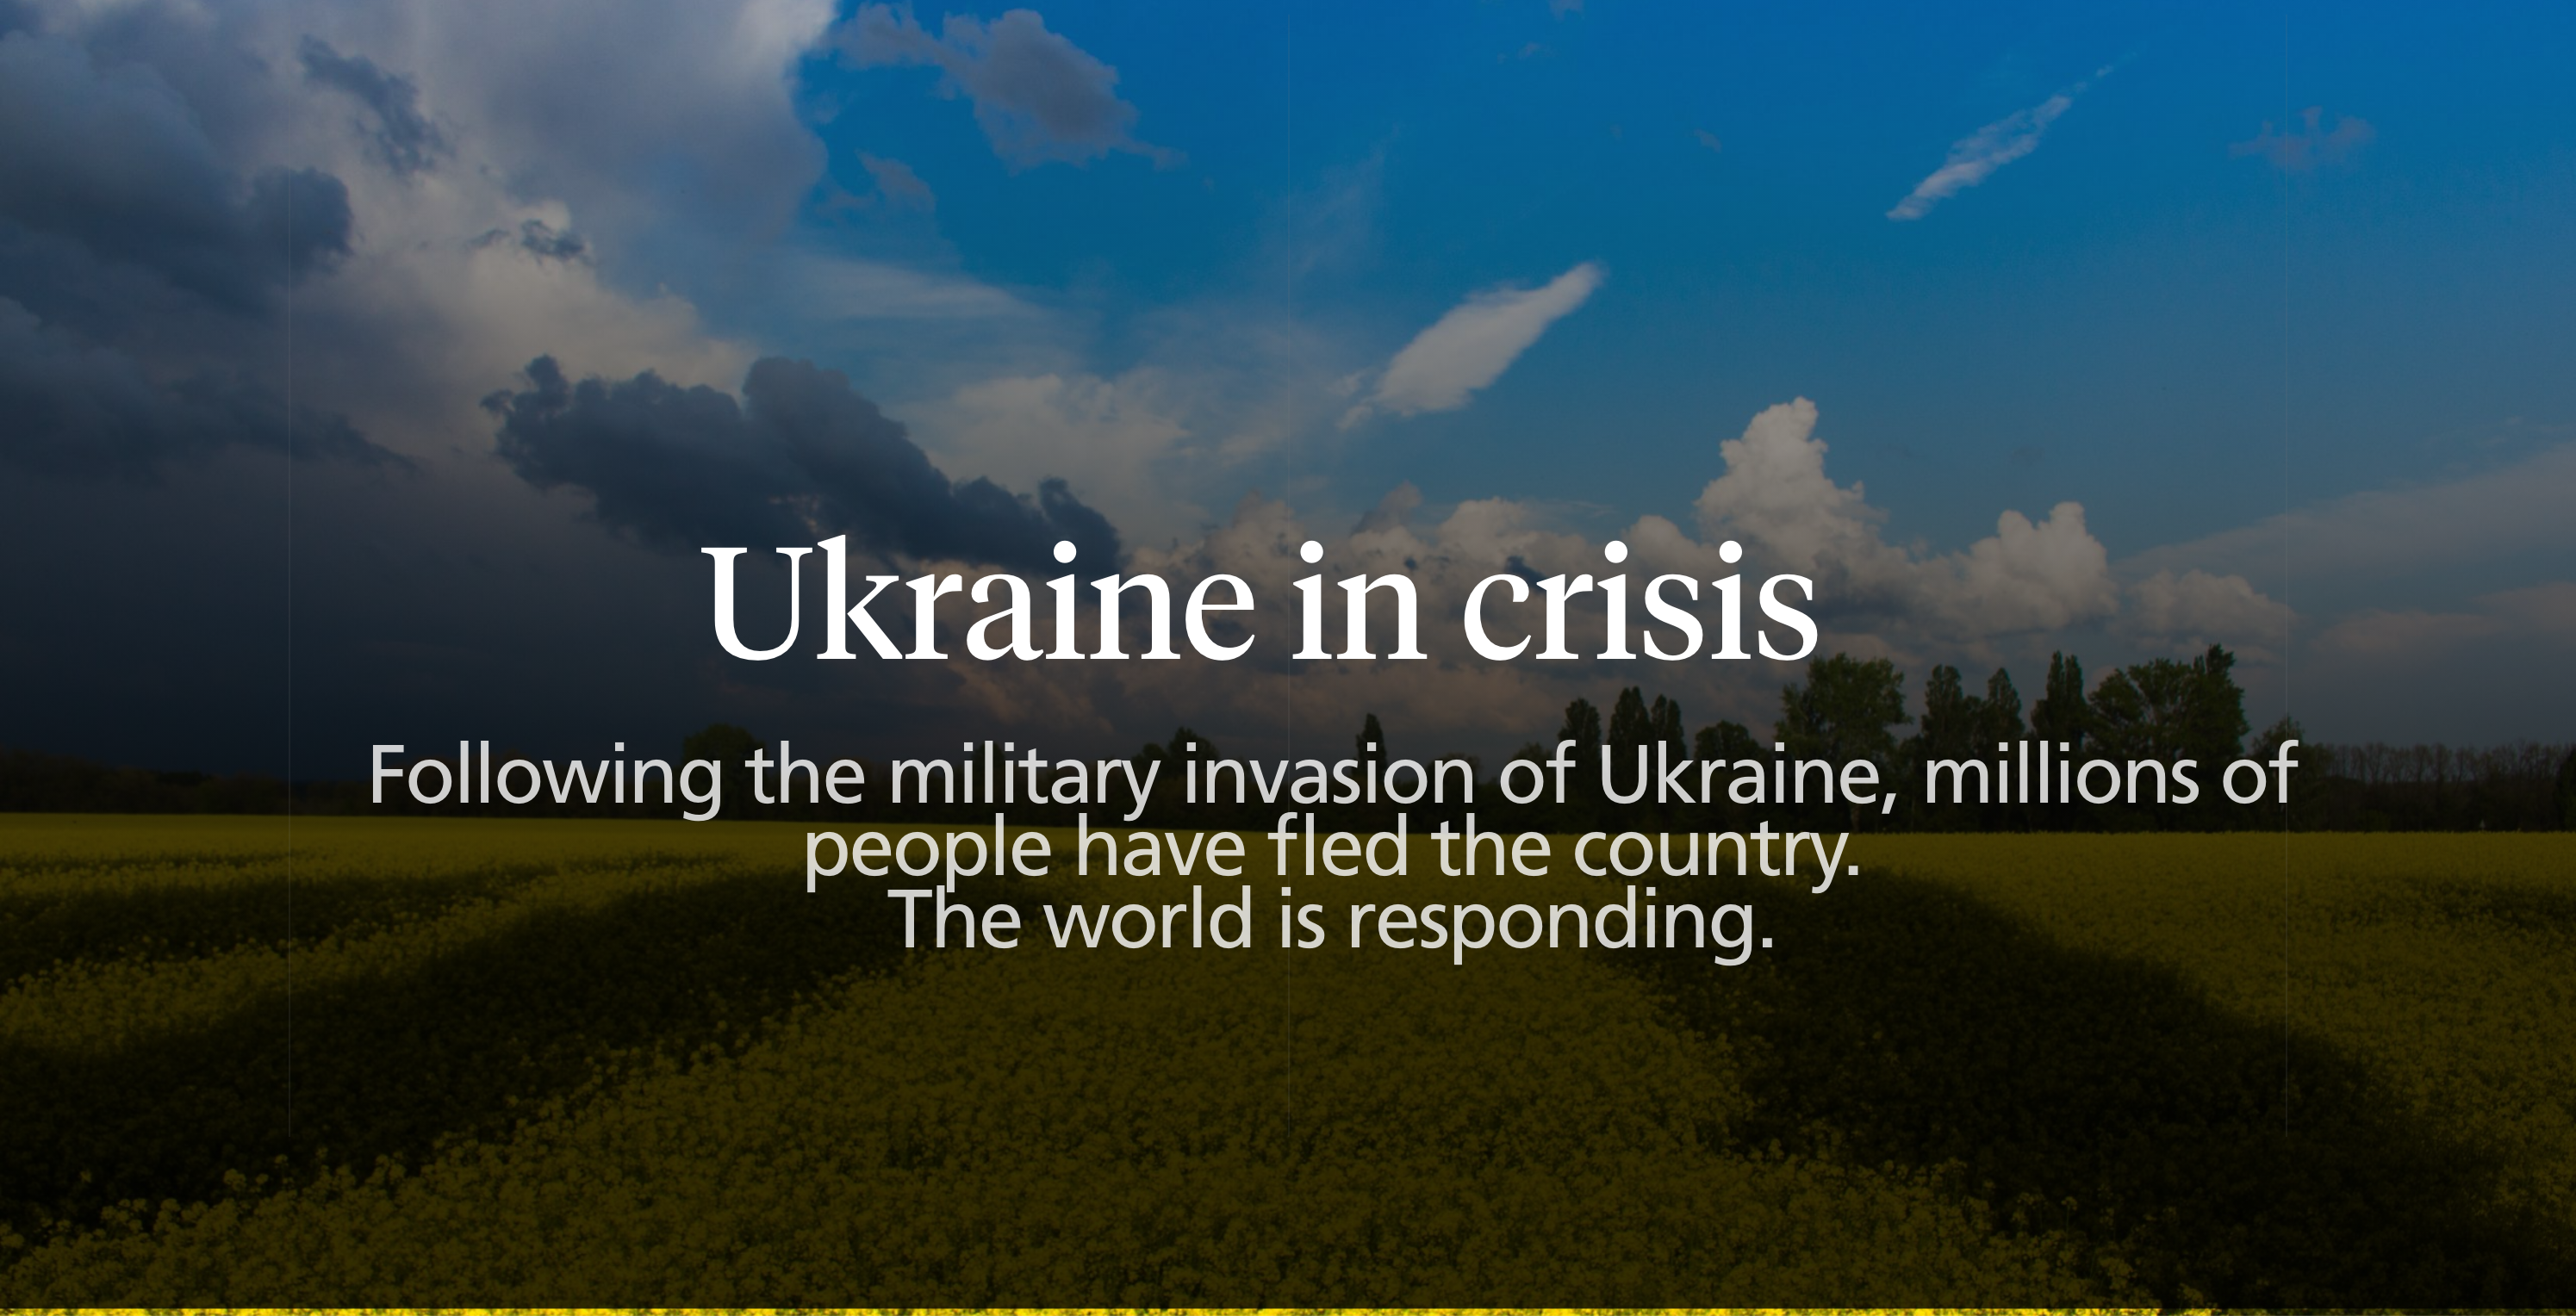 Ukraine in Crisis News Item